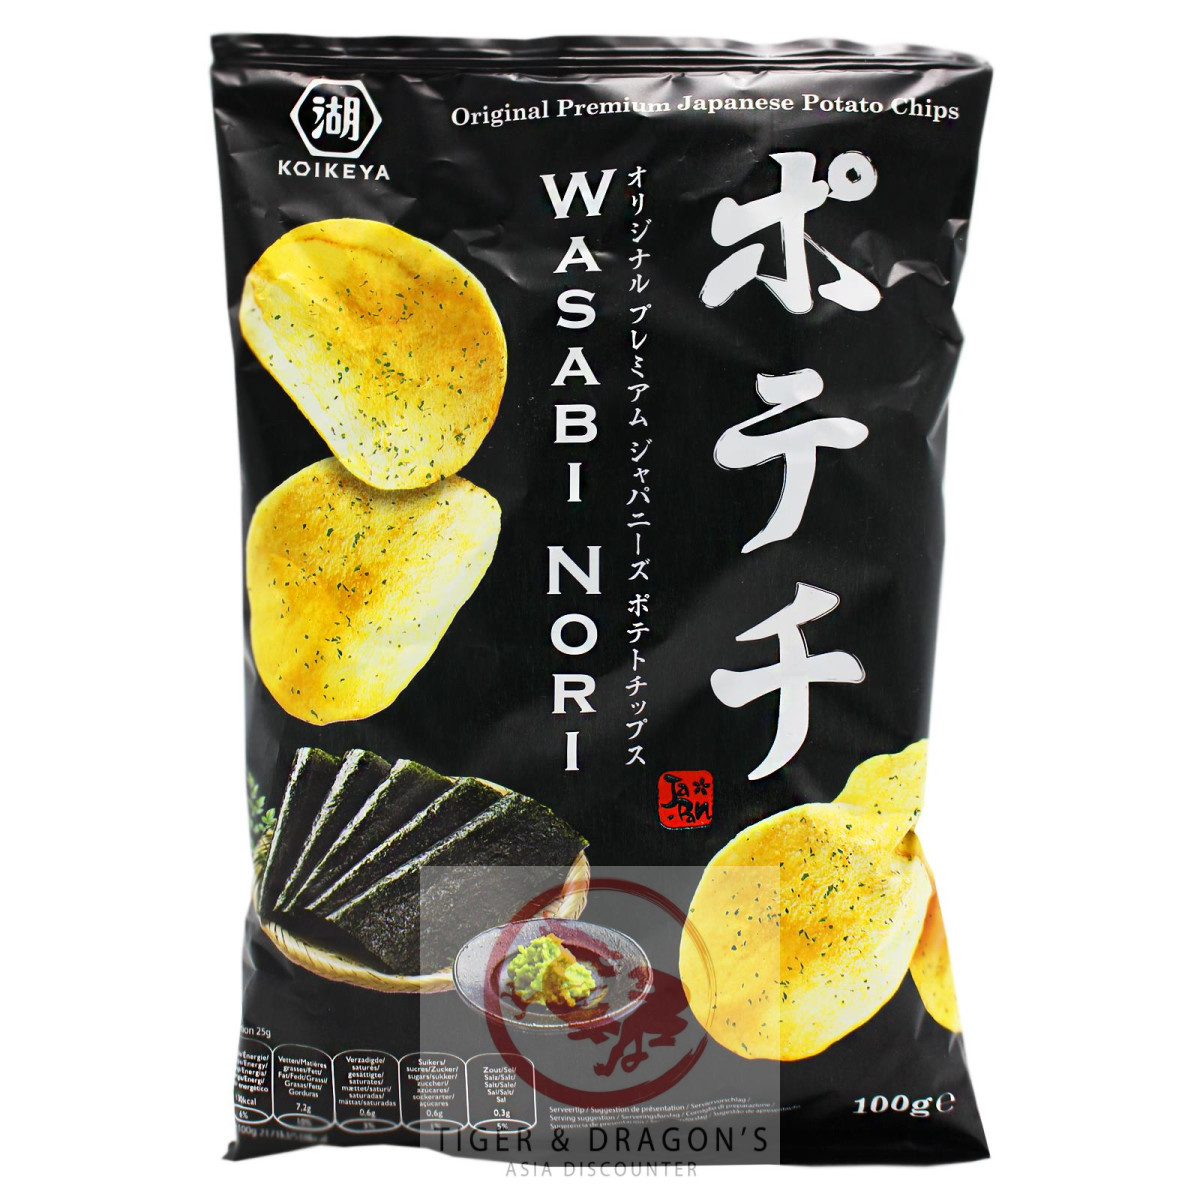 Koikeya Kartoffelchips mit Wasabi Nori Gewürz 100g